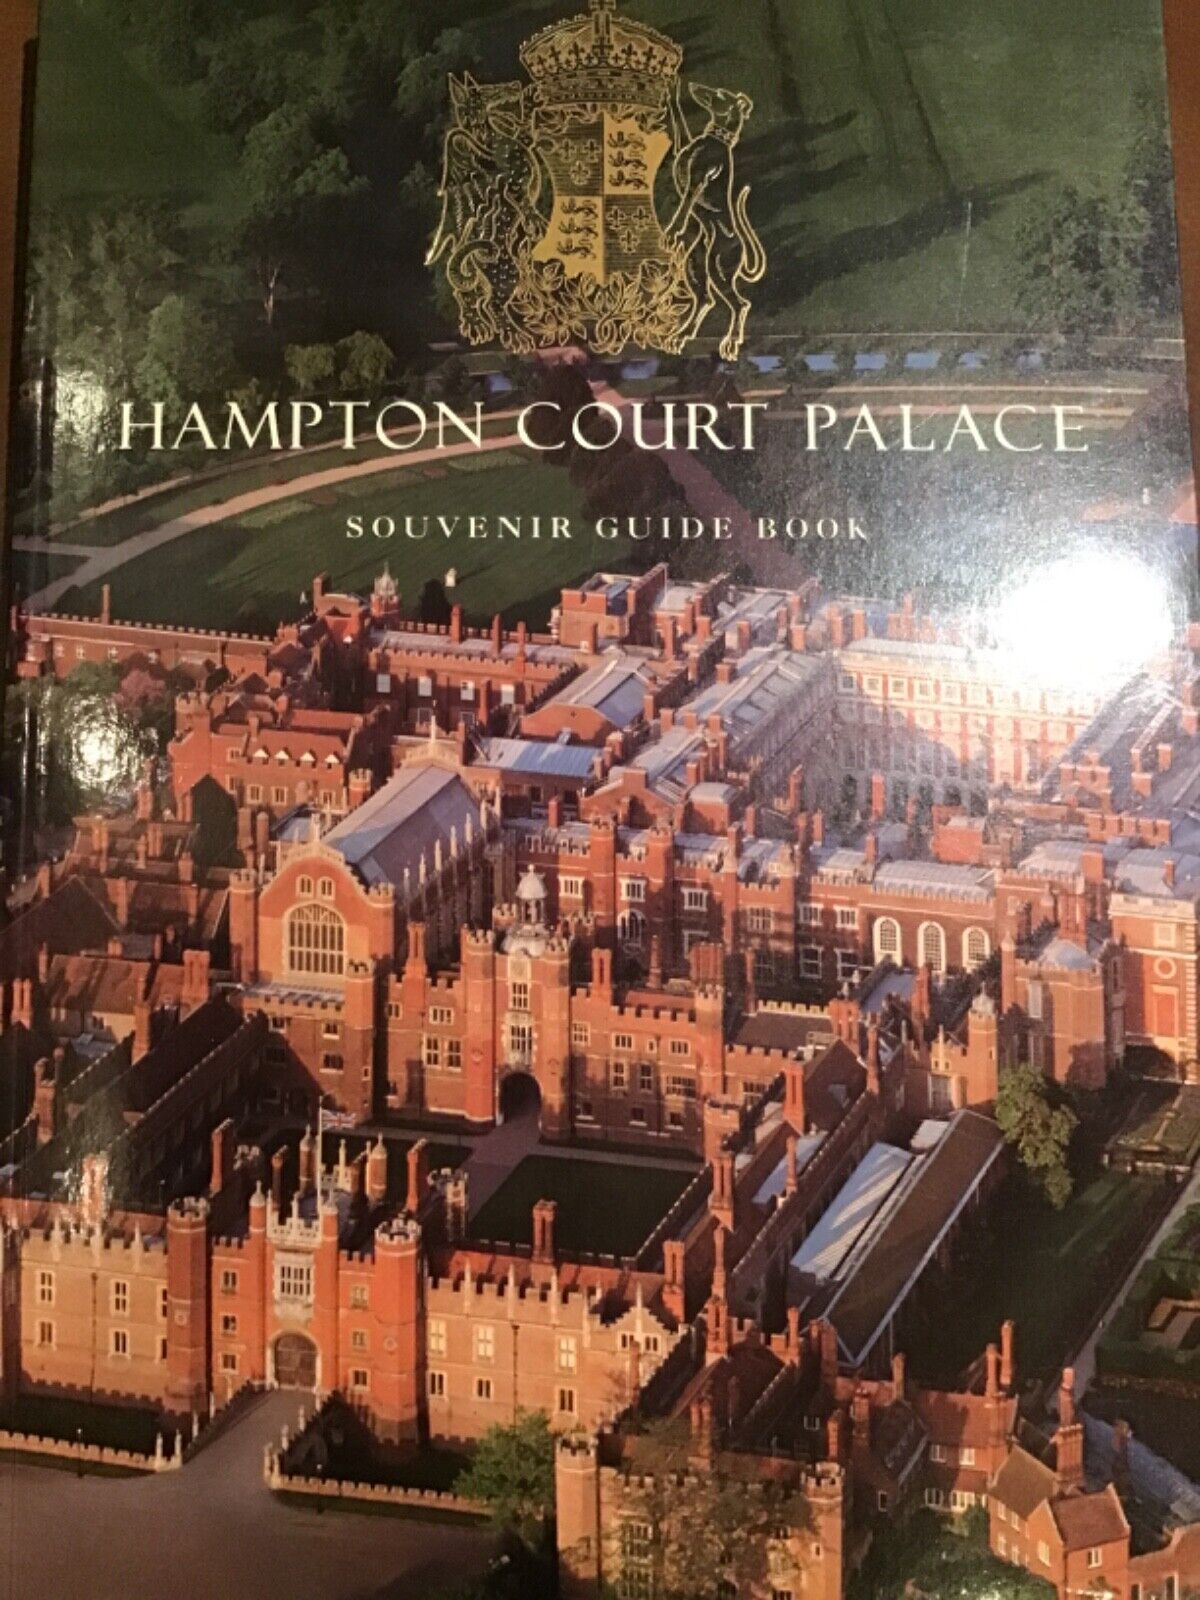 Hampton Court Palace Souvenir Guide Book Second edition August 1992